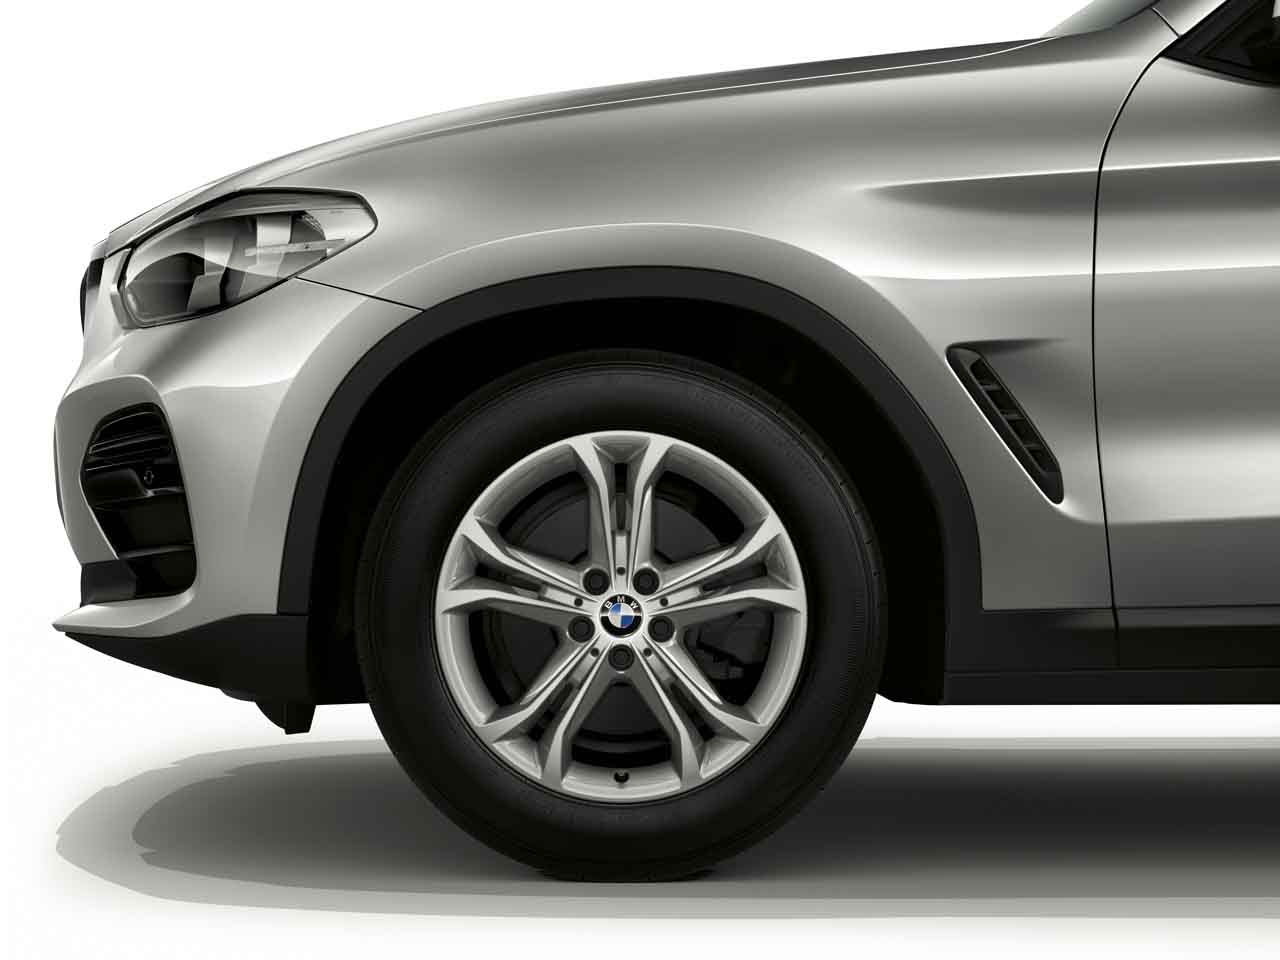 Originální zimní sada BMW X3 G01 a X4 G02 STYLING 688 v rozměru 7x18 ET22 včetně zimních pneumatik 225/60 R18 104H XL Pirelli Winter Sottozero 3* a…